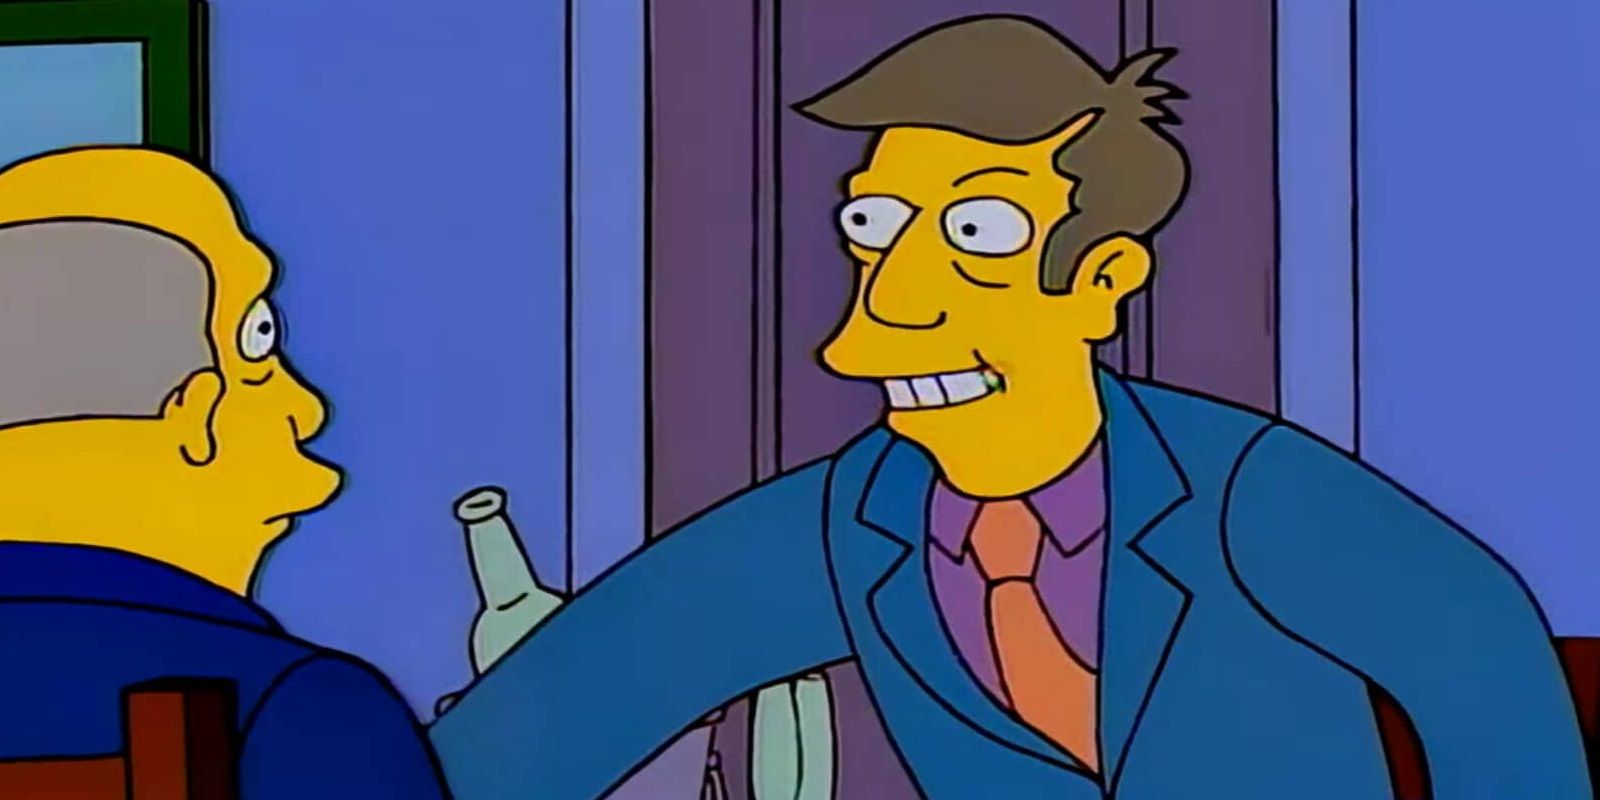 Principal Skinner in The Simpsons